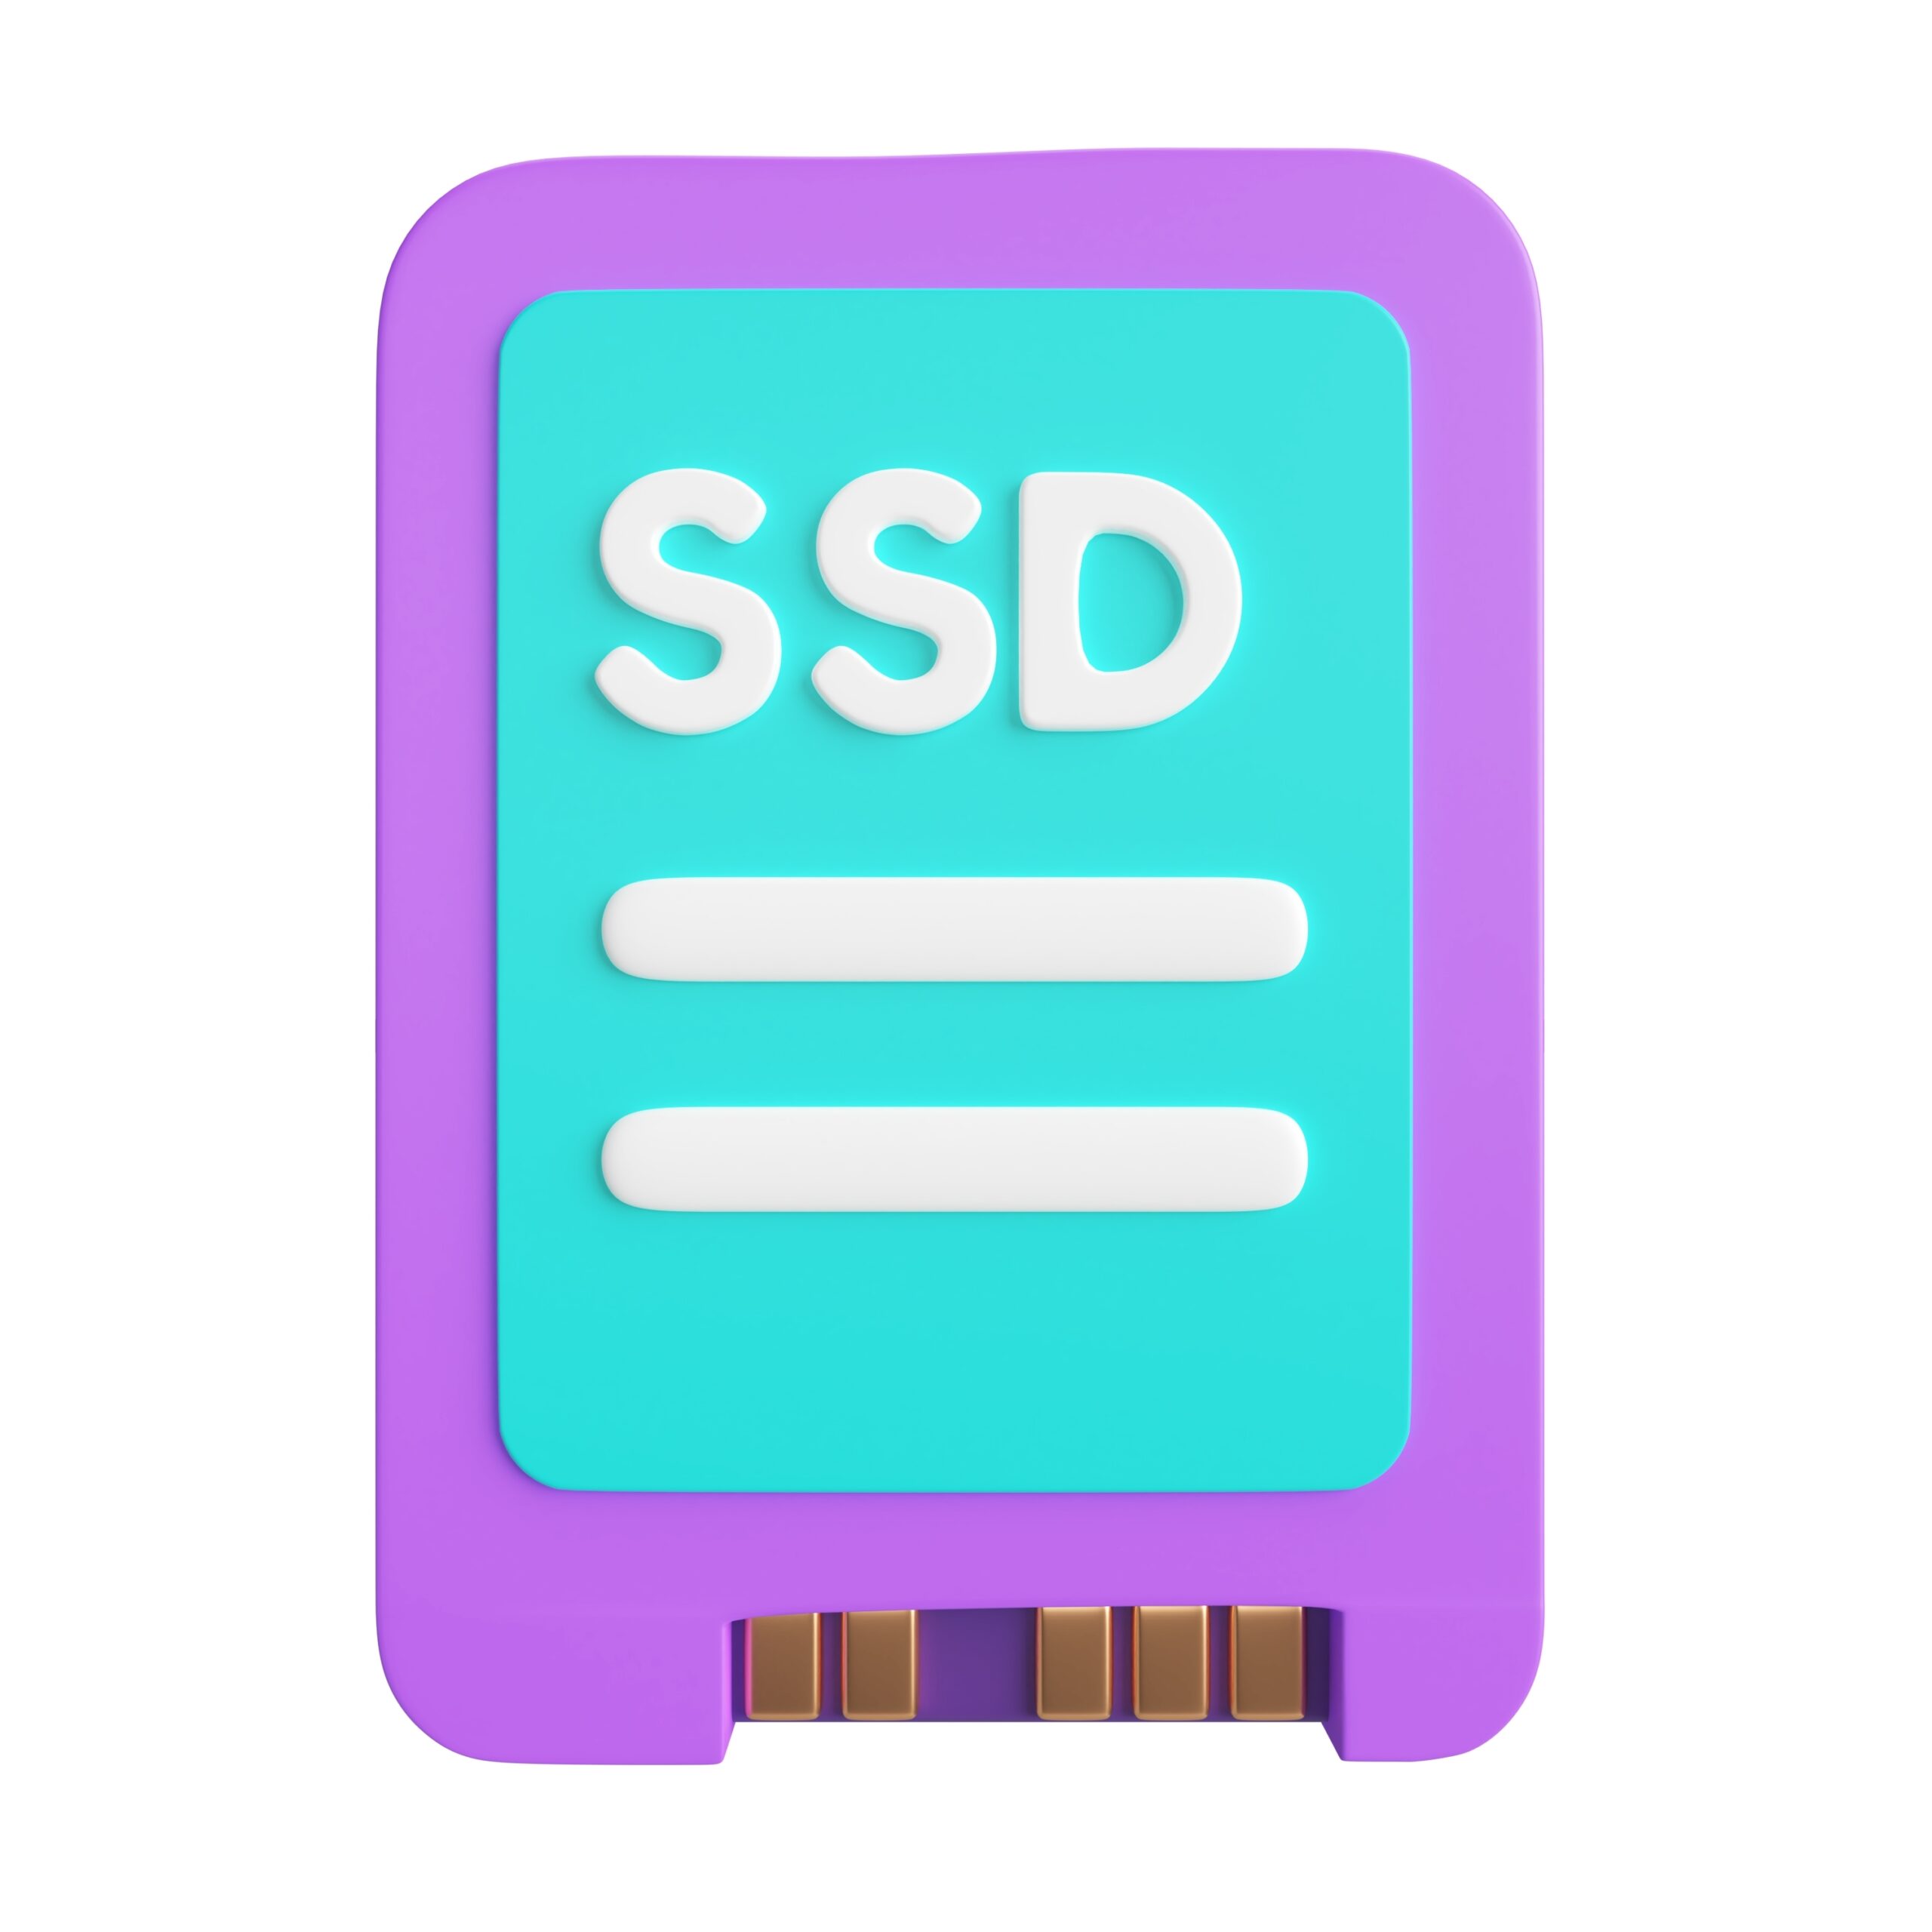 SSD の健全性を確認する方法: Windows 10 および Windows 11 ユーザーのためのガイド